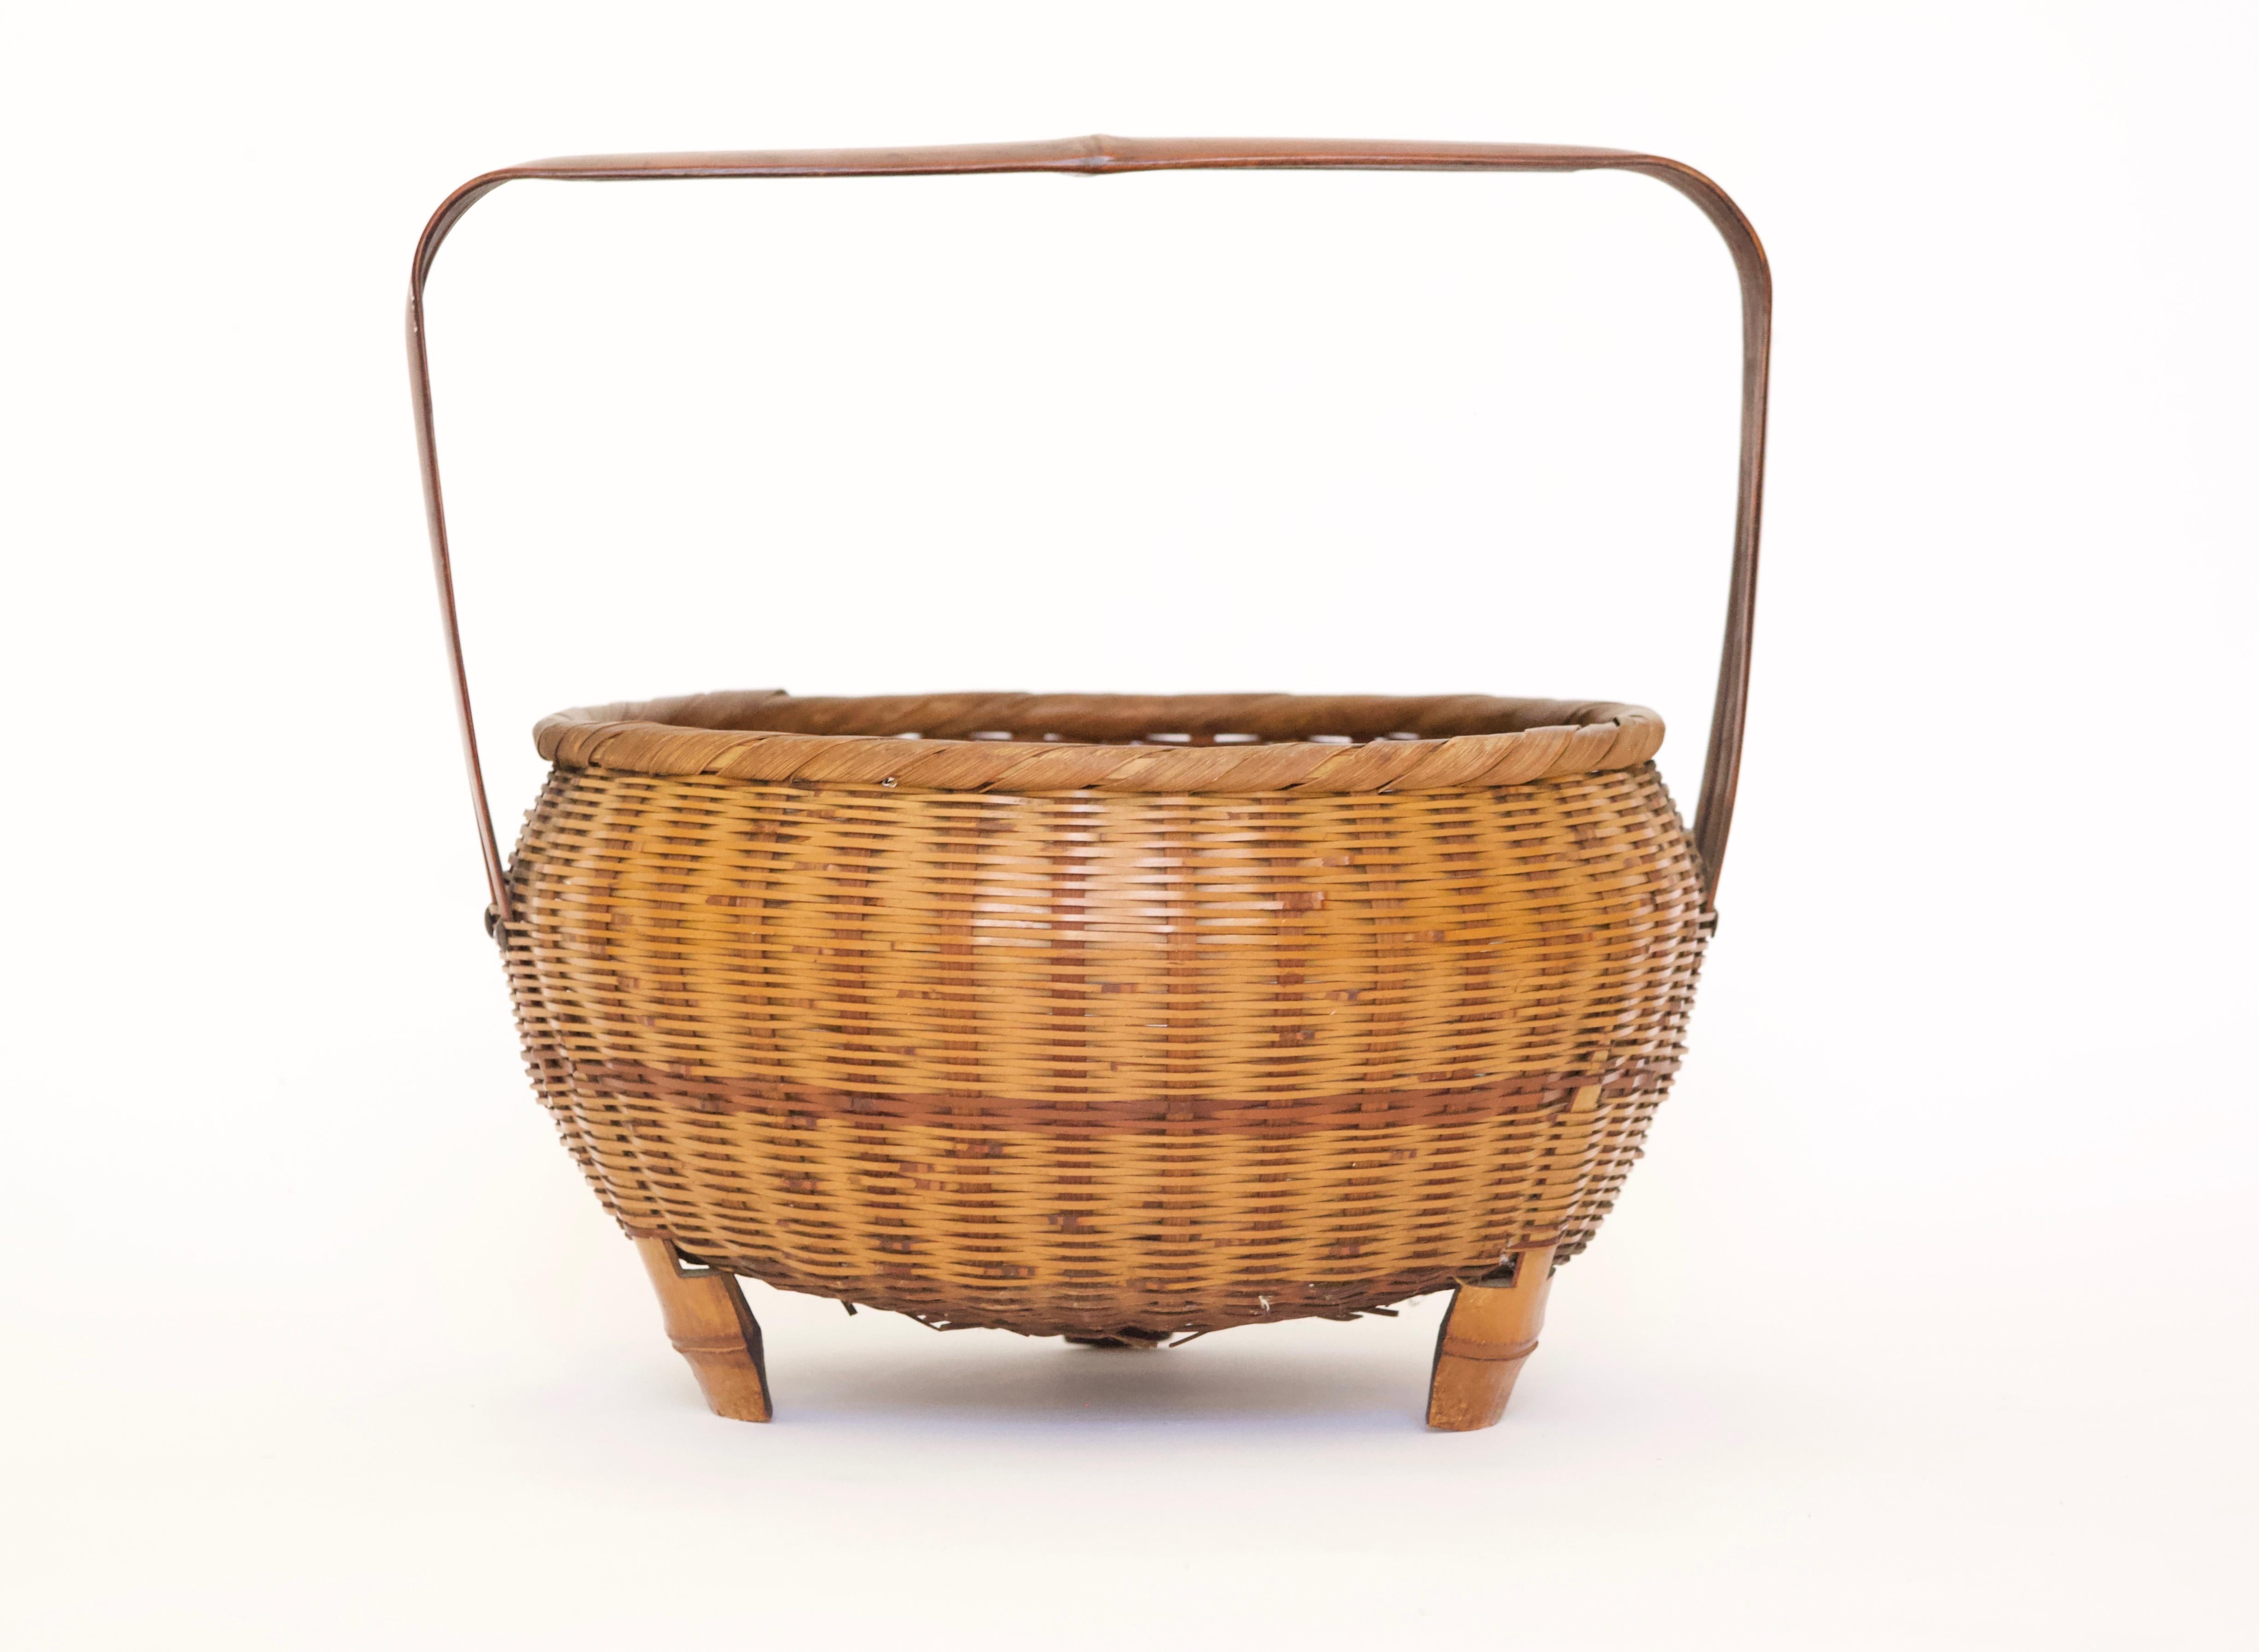 Japanese Edo era style woven bamboo basket with handle.